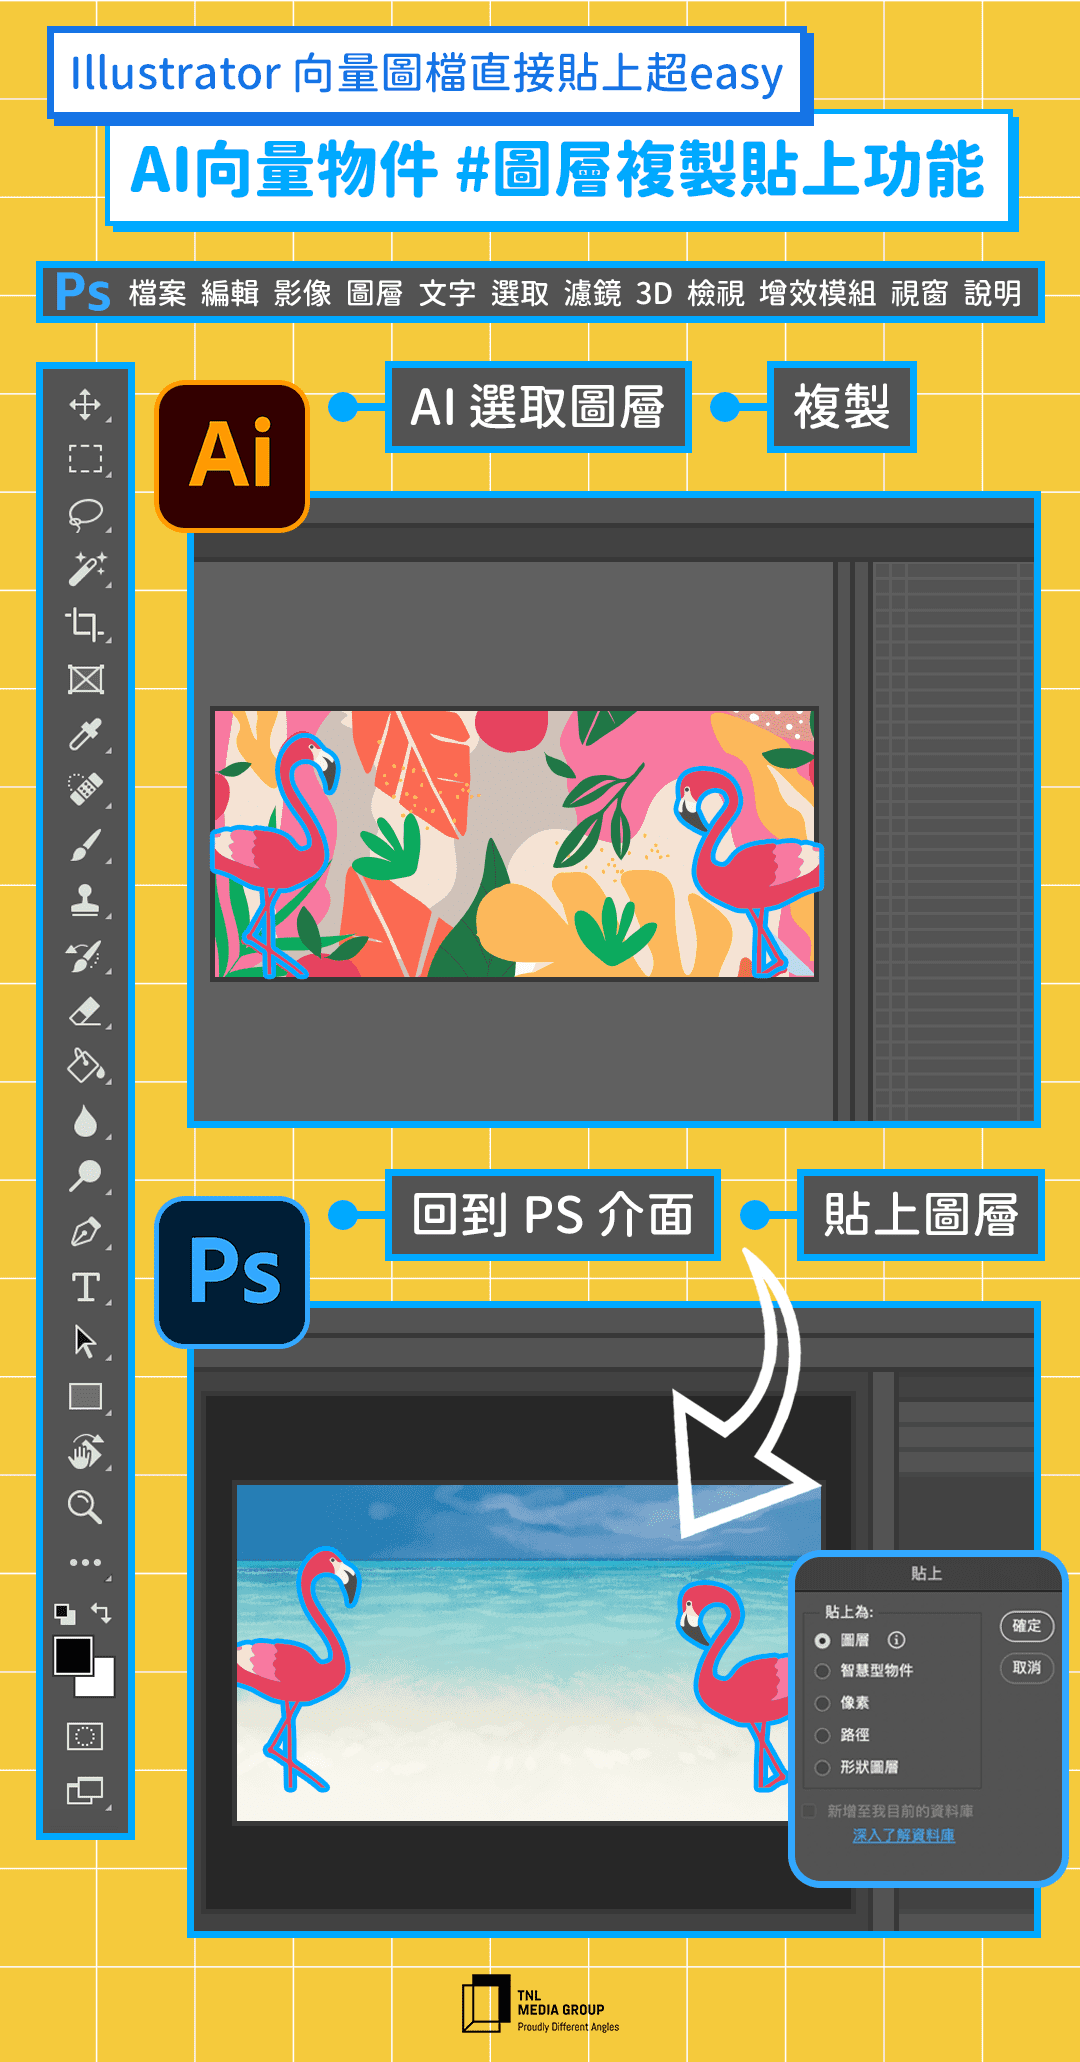 照片 中 提到 了 Illustrator 向量 圖檔 直接 貼上 超 Easy 、 AI 向量 物件 # 圖層 複製 貼上 、、 Ps 檔案 編輯 影像 圖層 文字 選取 濾鏡 說明 了 、、數碼 廣告、字形、軟件、